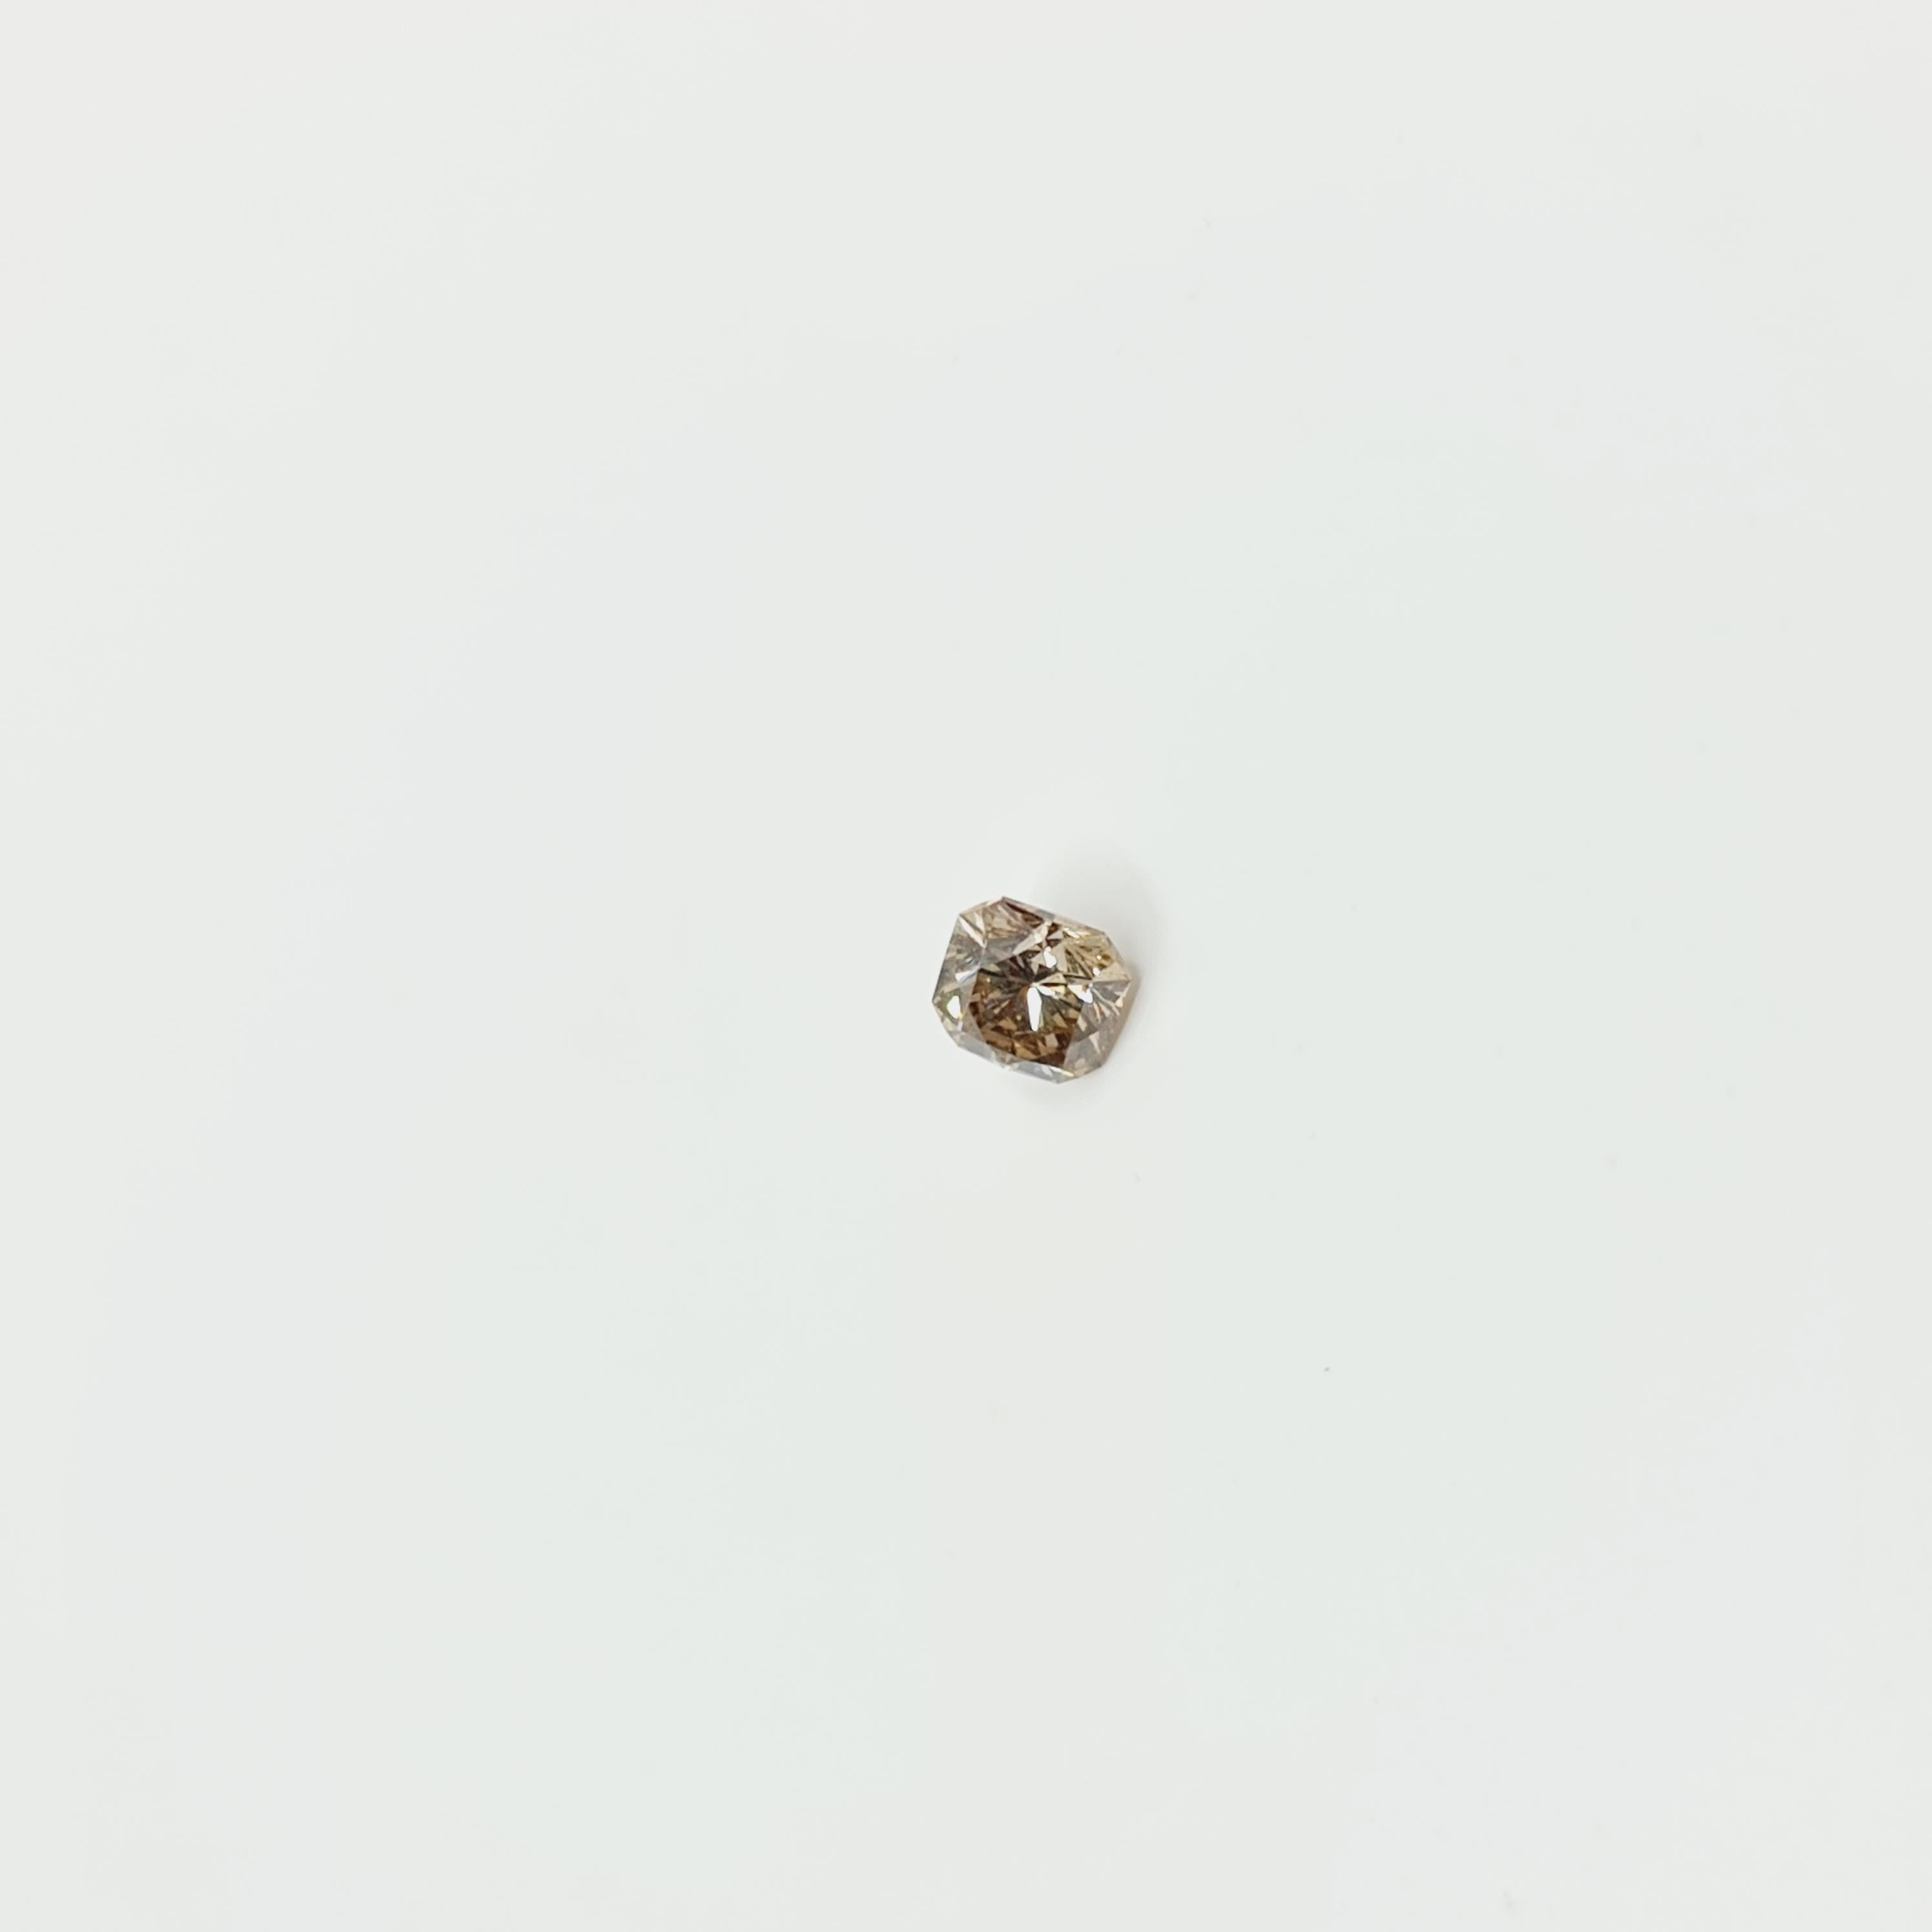 Taille octogone Diamant certifié GIA de couleur Brown (sans reflet) 0,47 carat VS2 